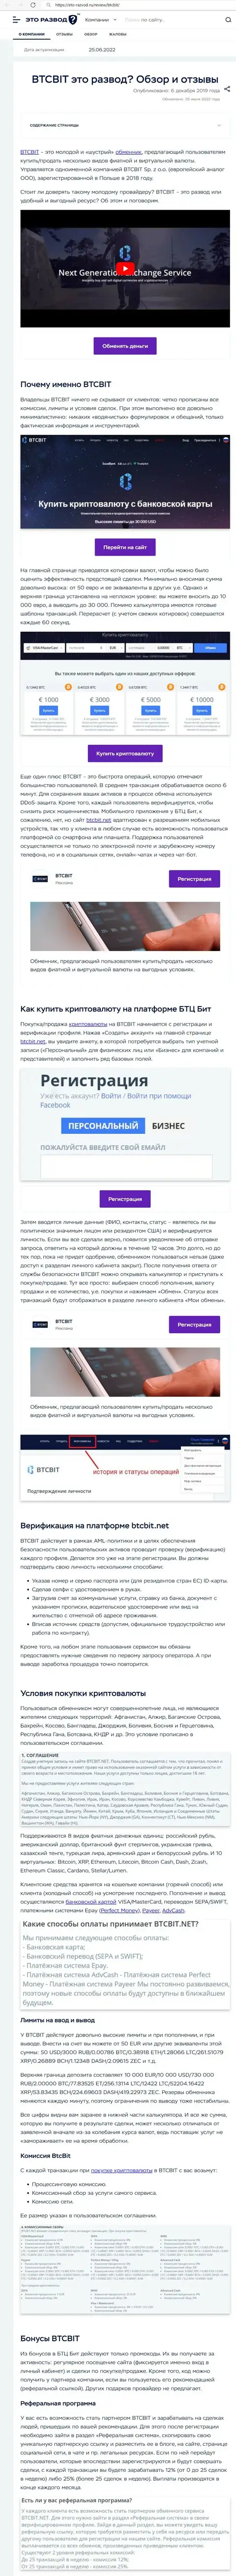 Обзор услуг и условия для работы online-обменника BTCBit в обзорной статье на сайте Eto Razvod Ru